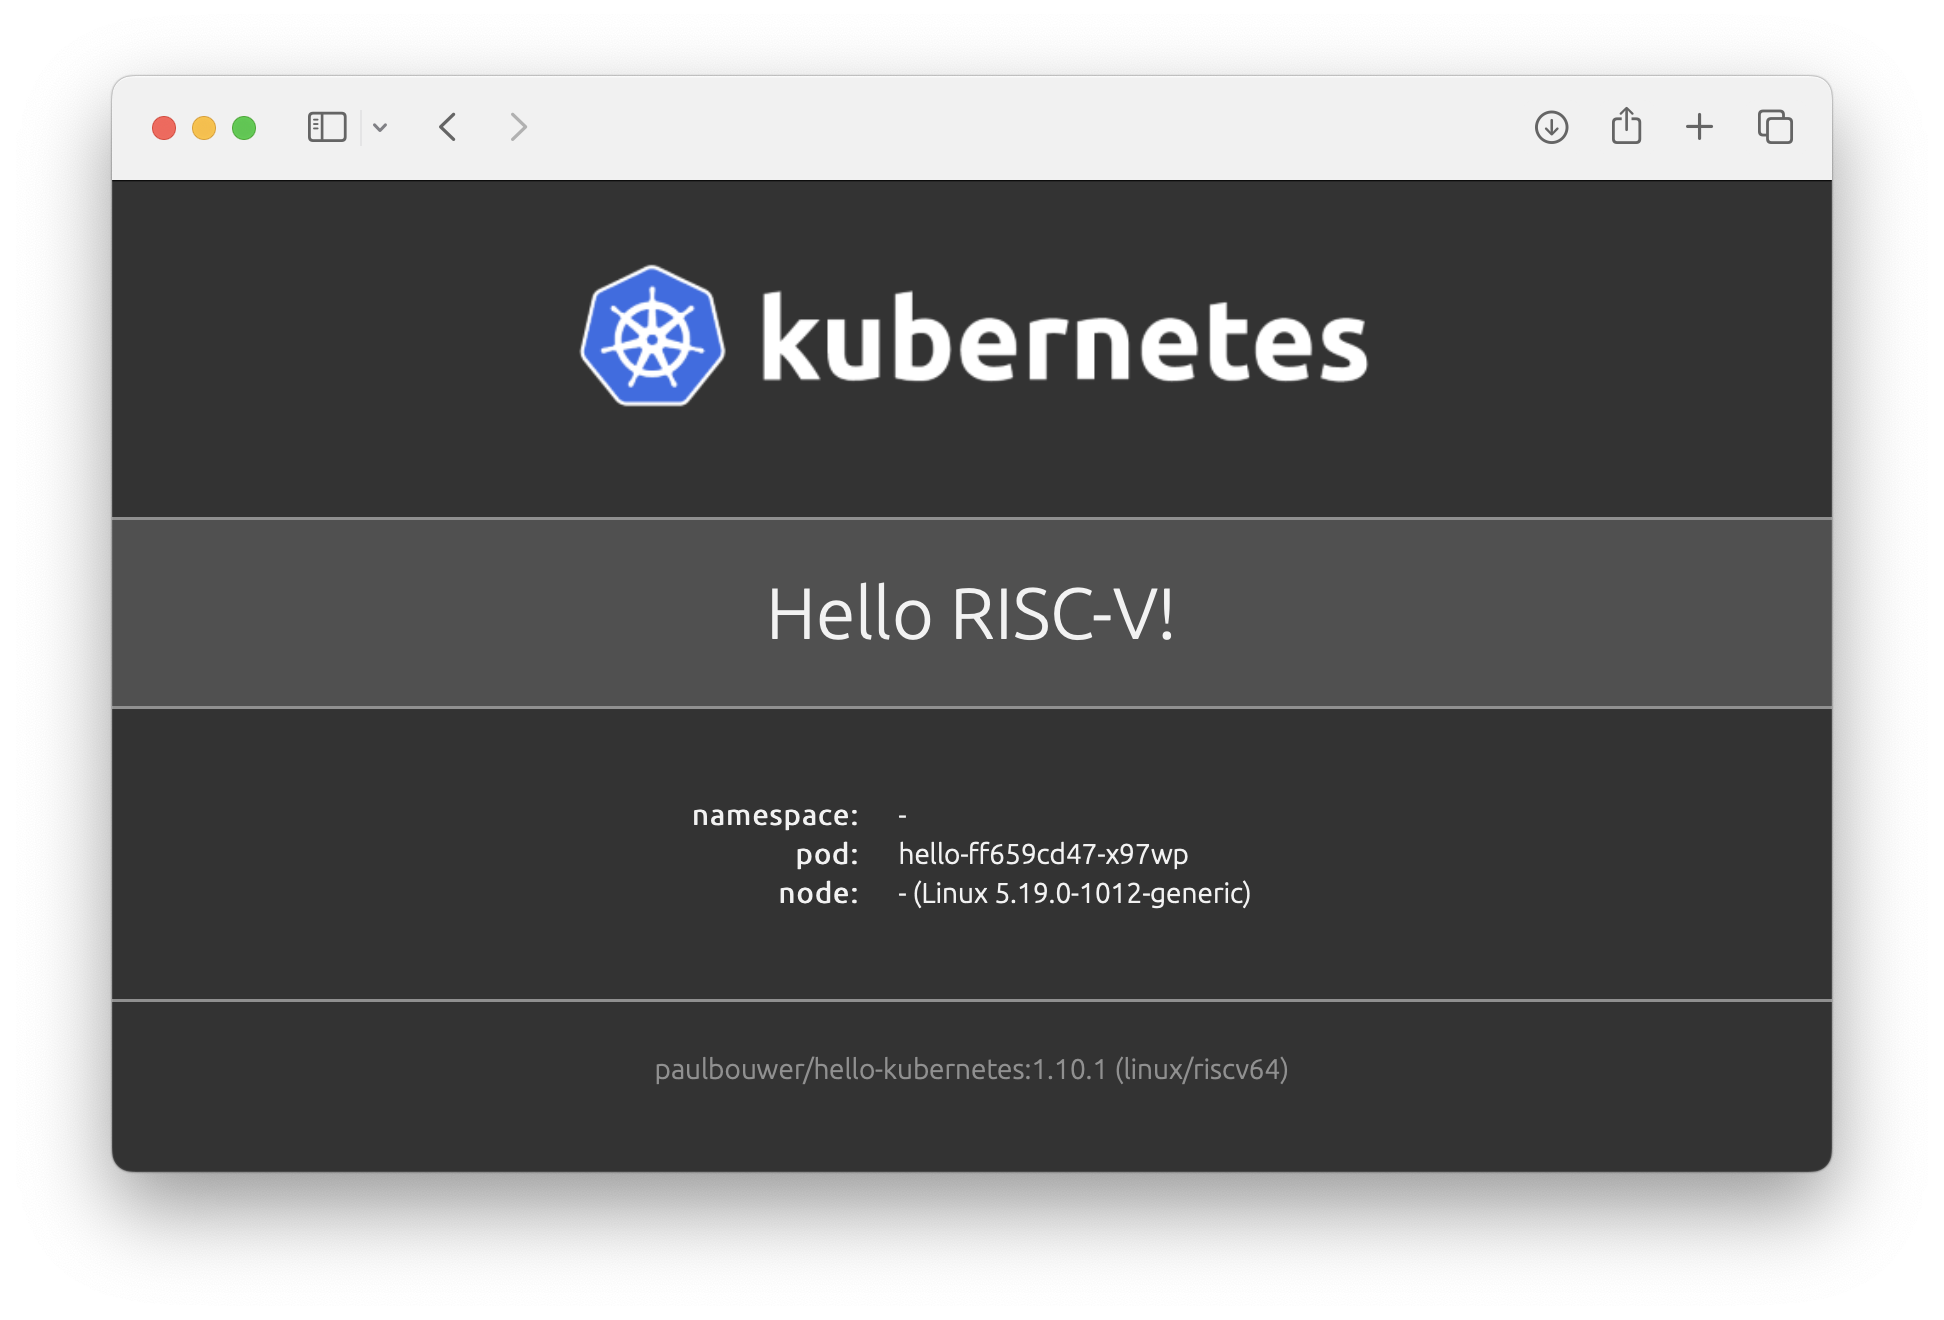 Hello RISC-V!